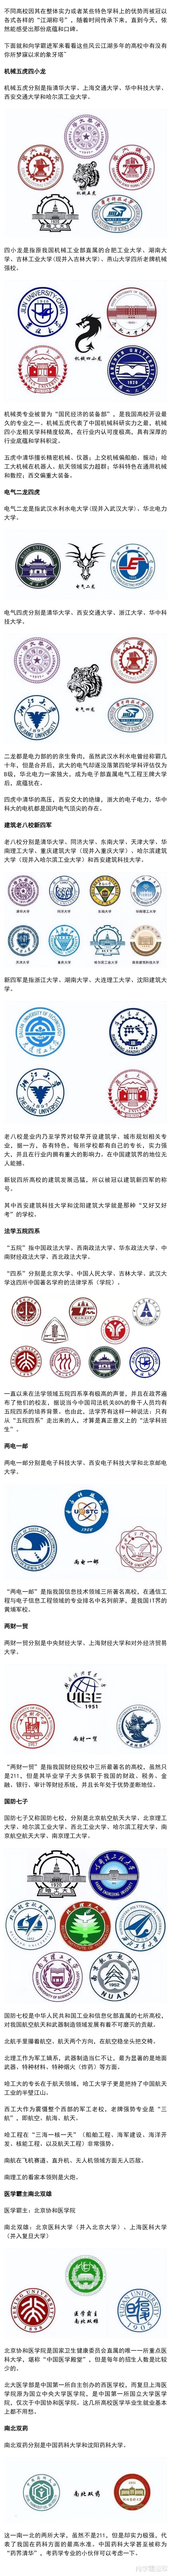 各行业中名震江湖的大学, 都有哪些?